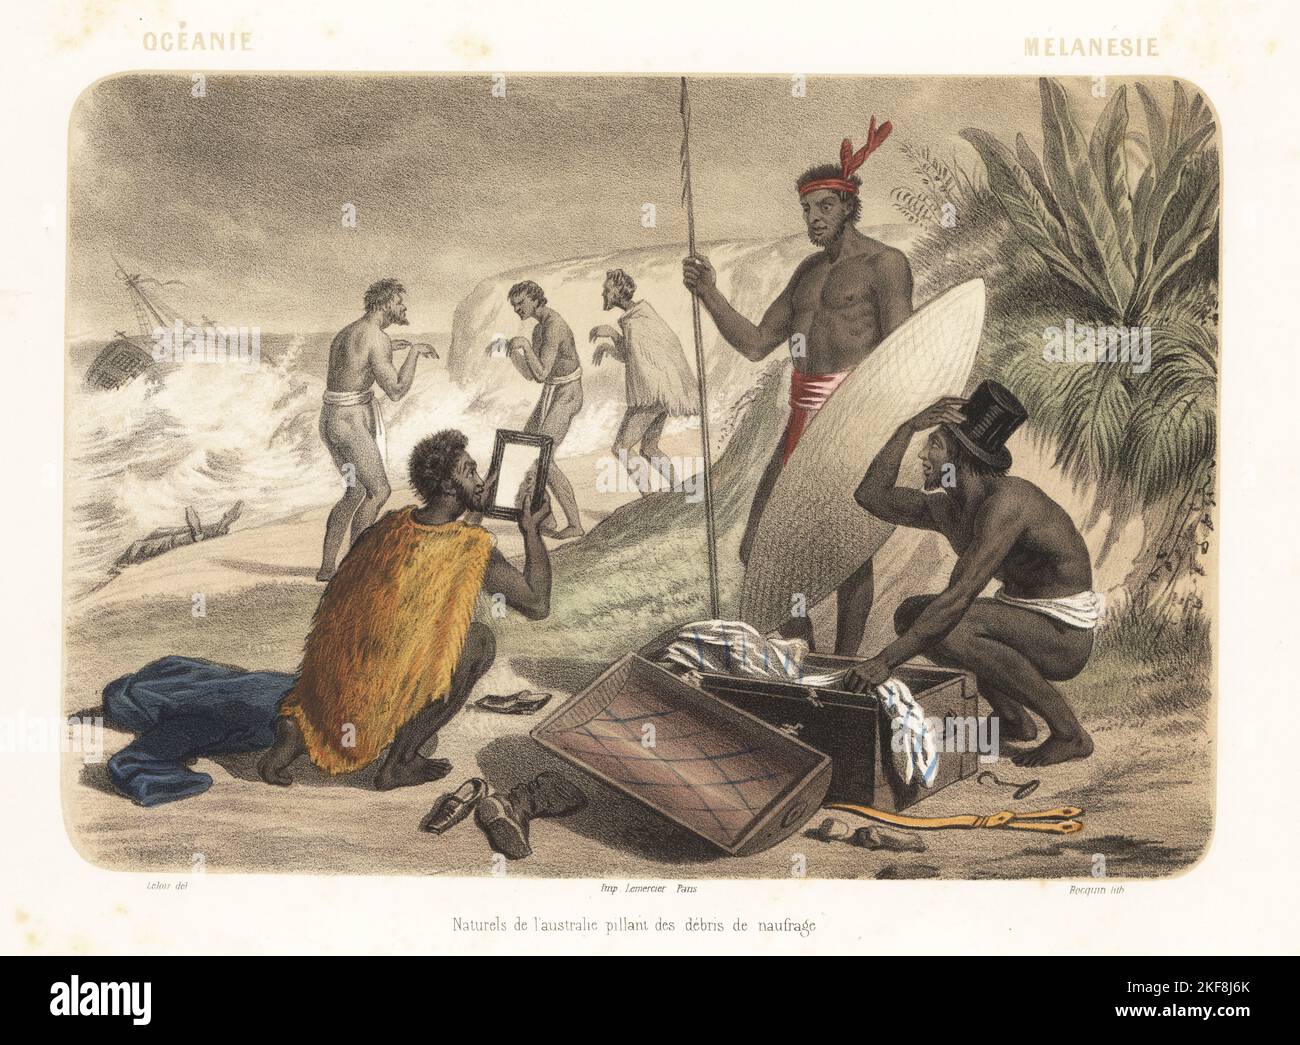 Costumi di Australia, Oceania, 1858. Uomini aborigeni che esaminano il flotsam da un naufragio europeo su una spiaggia. In panni e cappe, armati di lancia e scudo, tengono un cappello e uno specchio per le mani. Naturels de l'Australie pillant des detriti de naufrage. Litografia colorata a mano e con tonalità seppia di Jean-Adolphe Bocquin dopo un'illustrazione di Auguste Leloir di Elisabeth Muller (pseudonimo di Leonie Bedelet), le Monde en Estampes, The World in Prints, Amadee Bedelet, Parigi, 1858. Foto Stock